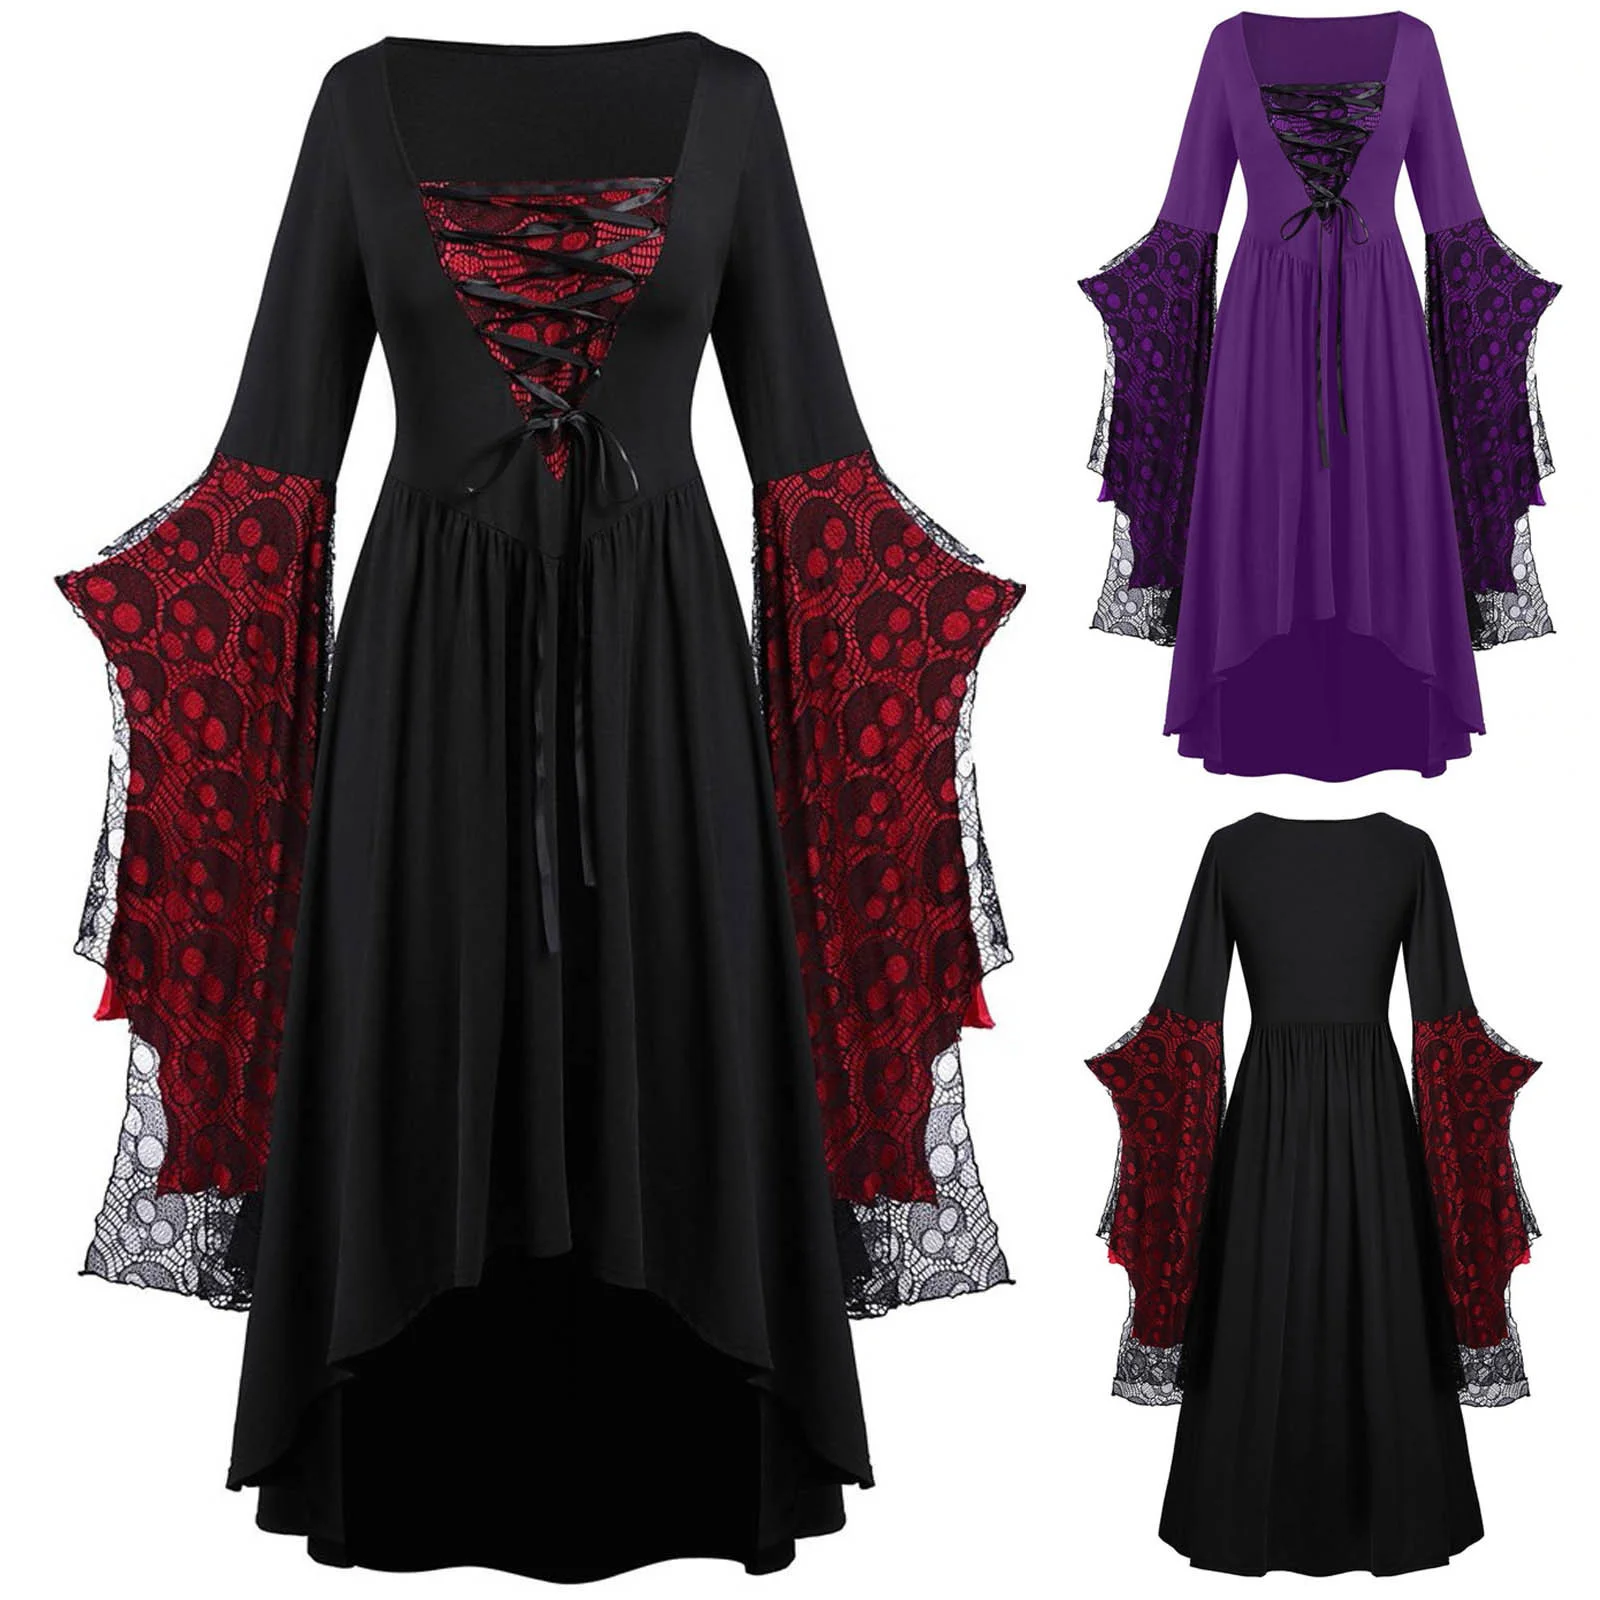 Moda gótico retro do dia das bruxas, vestido de cópia da abóbora do fantasma, vestido de casamento feminino do vampiro